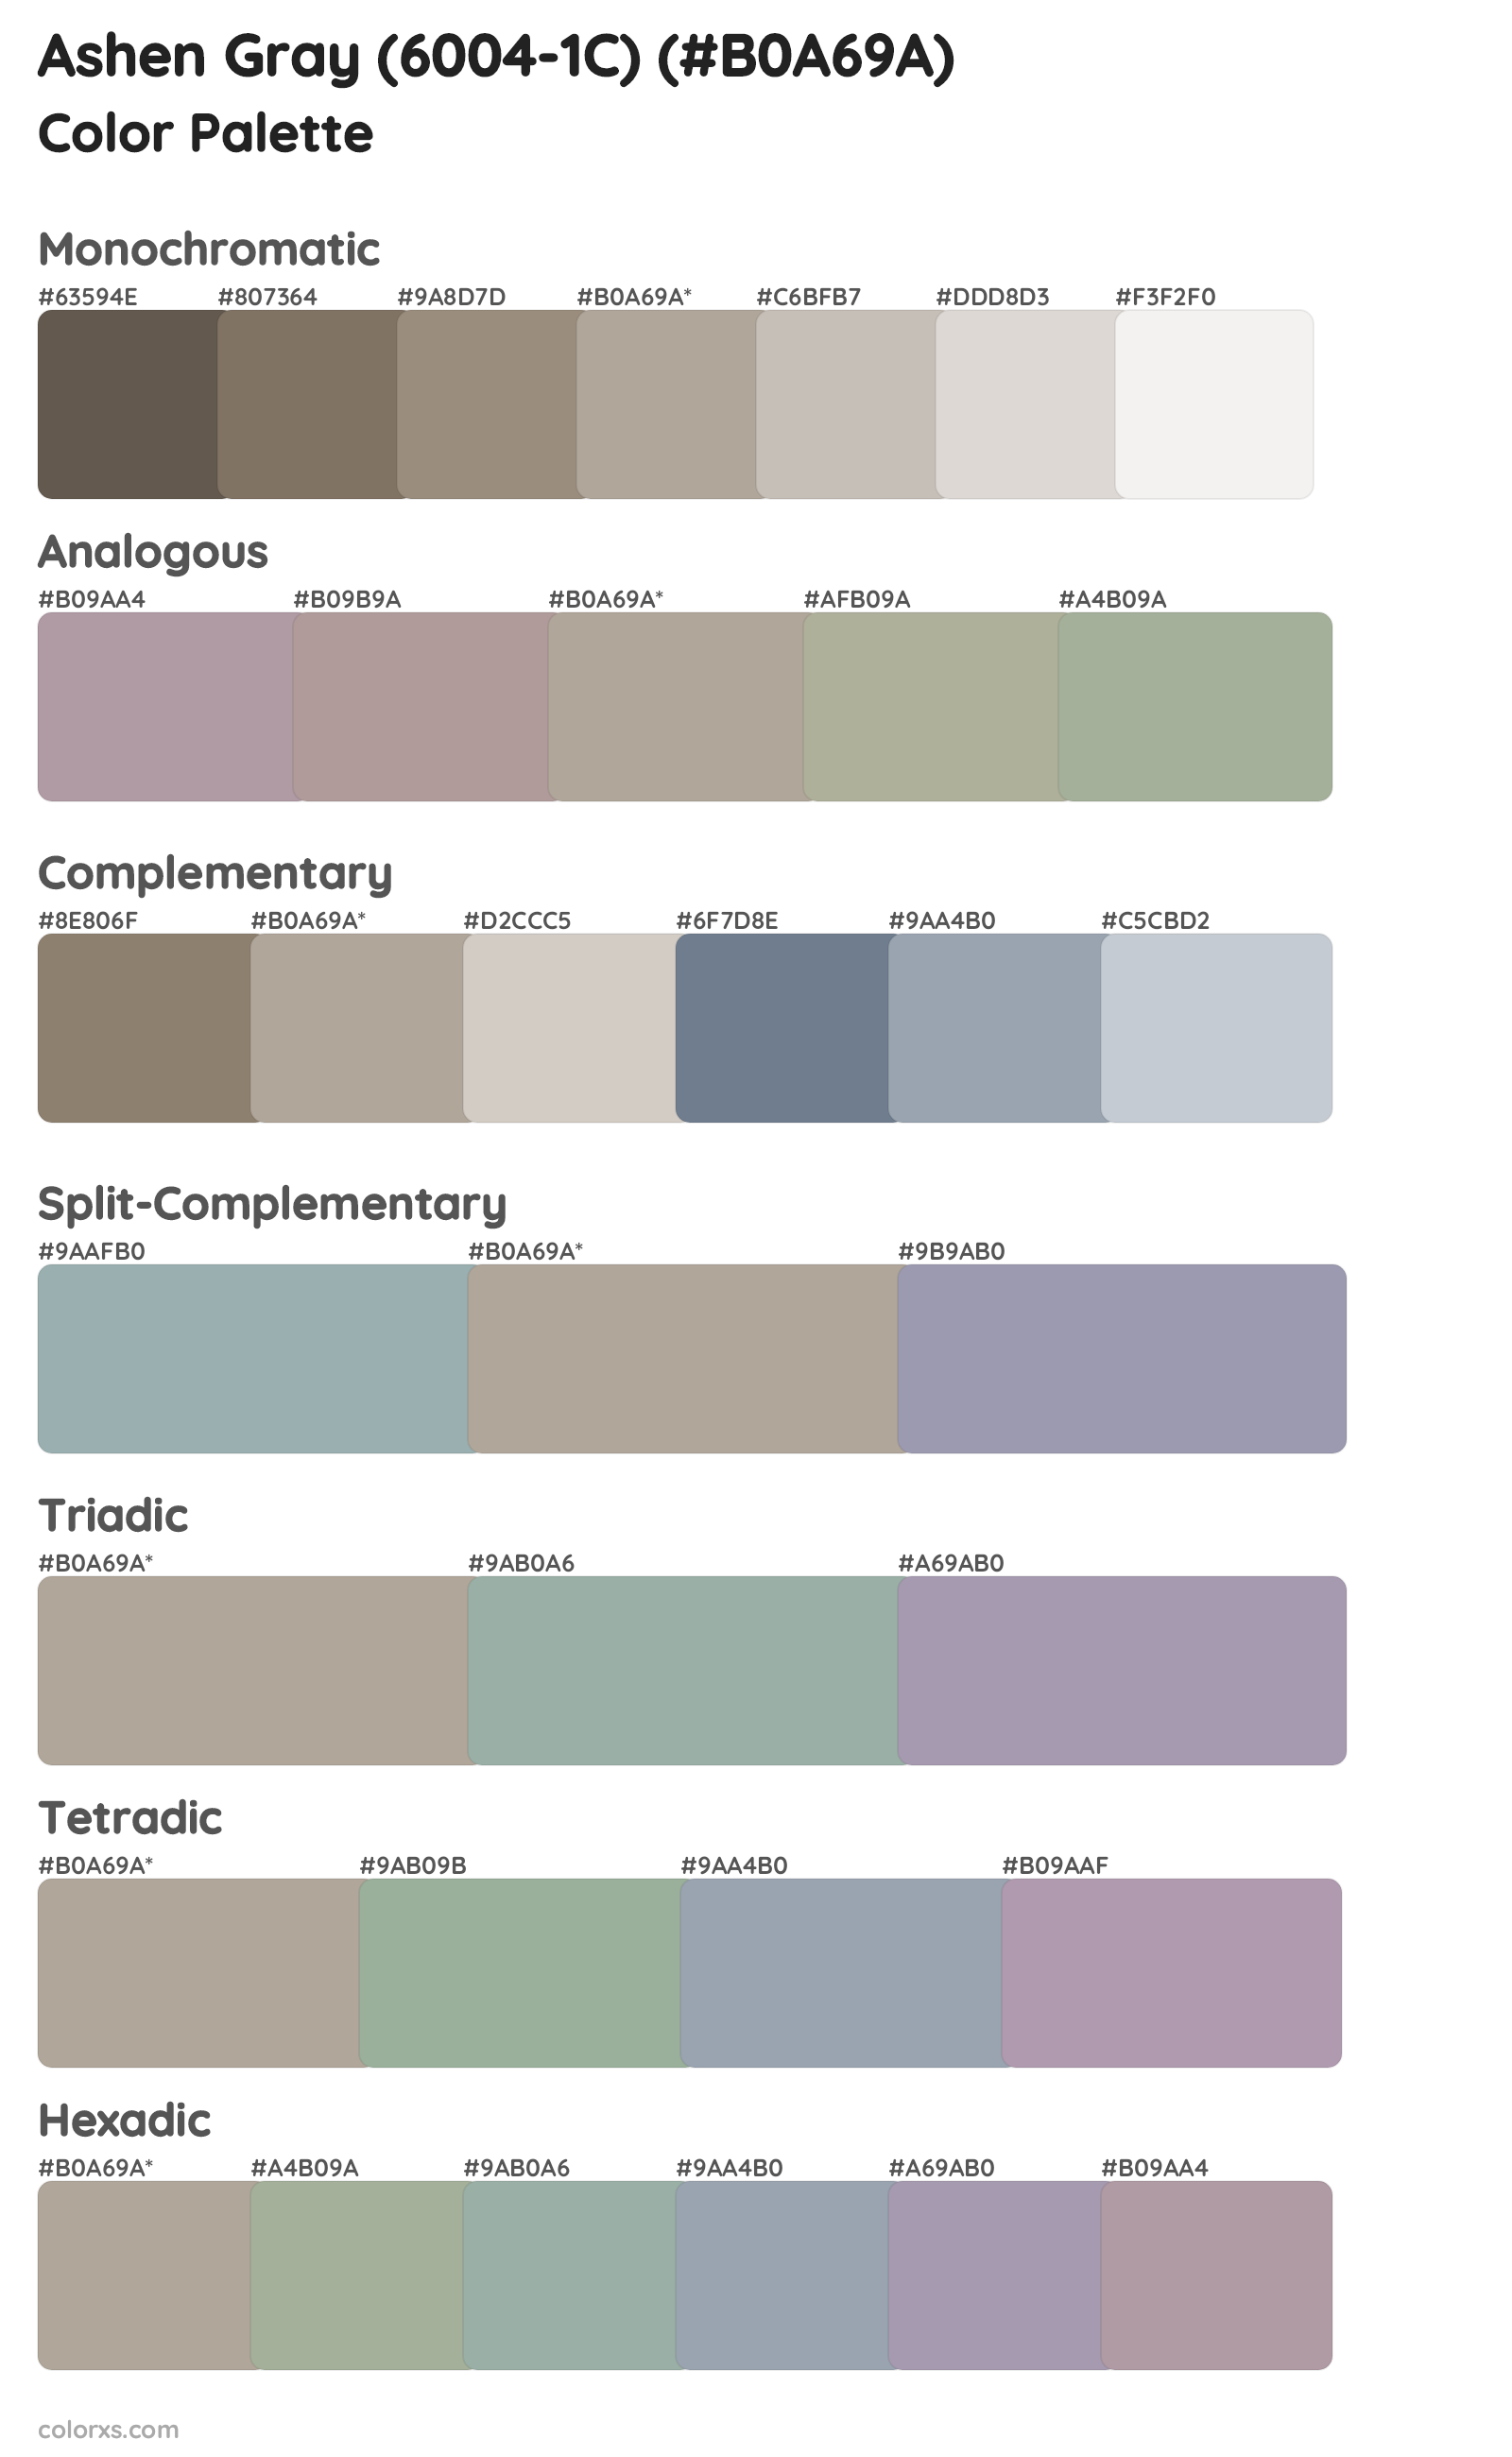 Ashen Gray (6004-1C) Color Scheme Palettes